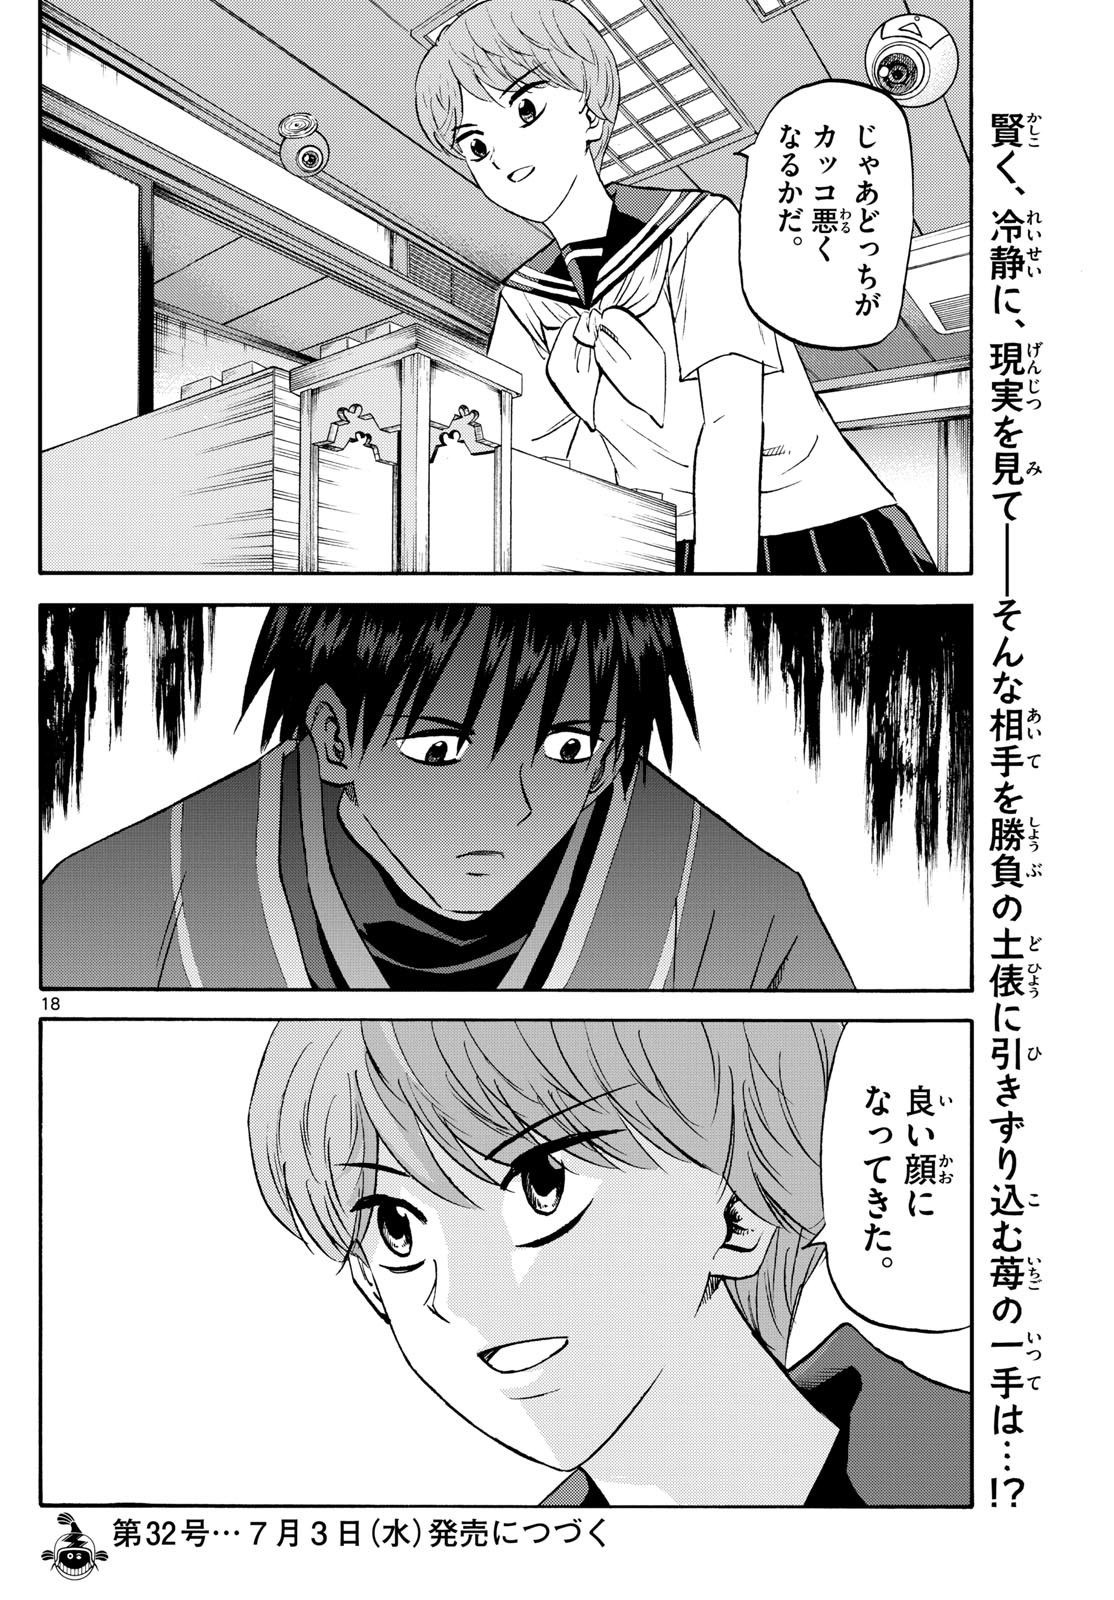 Ryu-to-Ichigo - Chapter 197 - Page 18